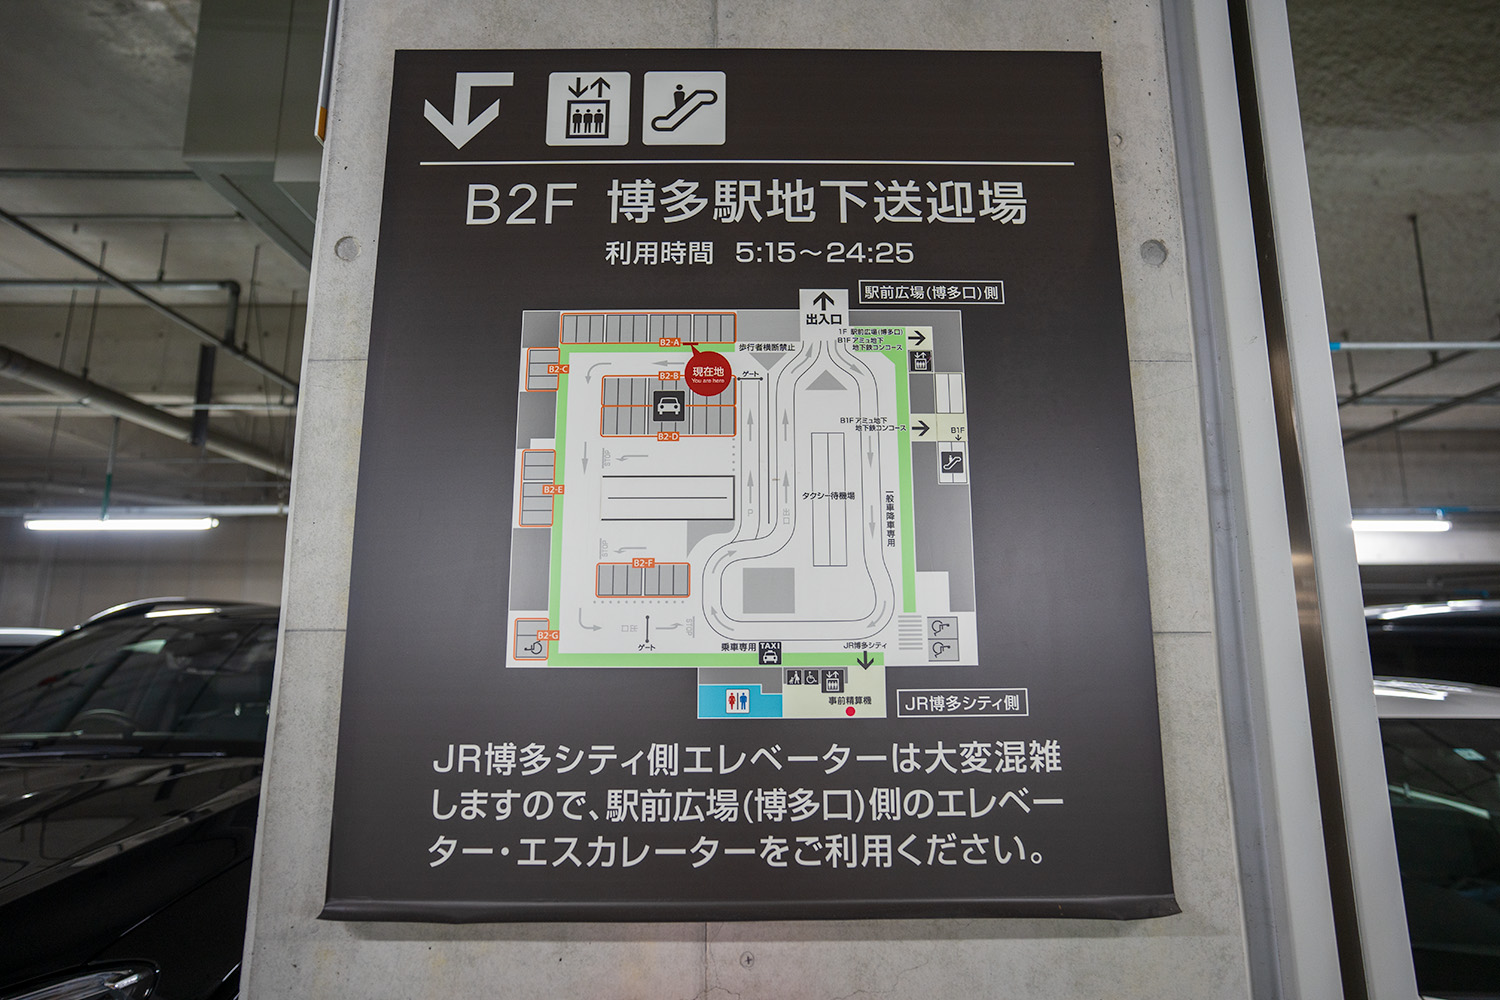 博多駅地下駐車場・送迎場のフロアマップ